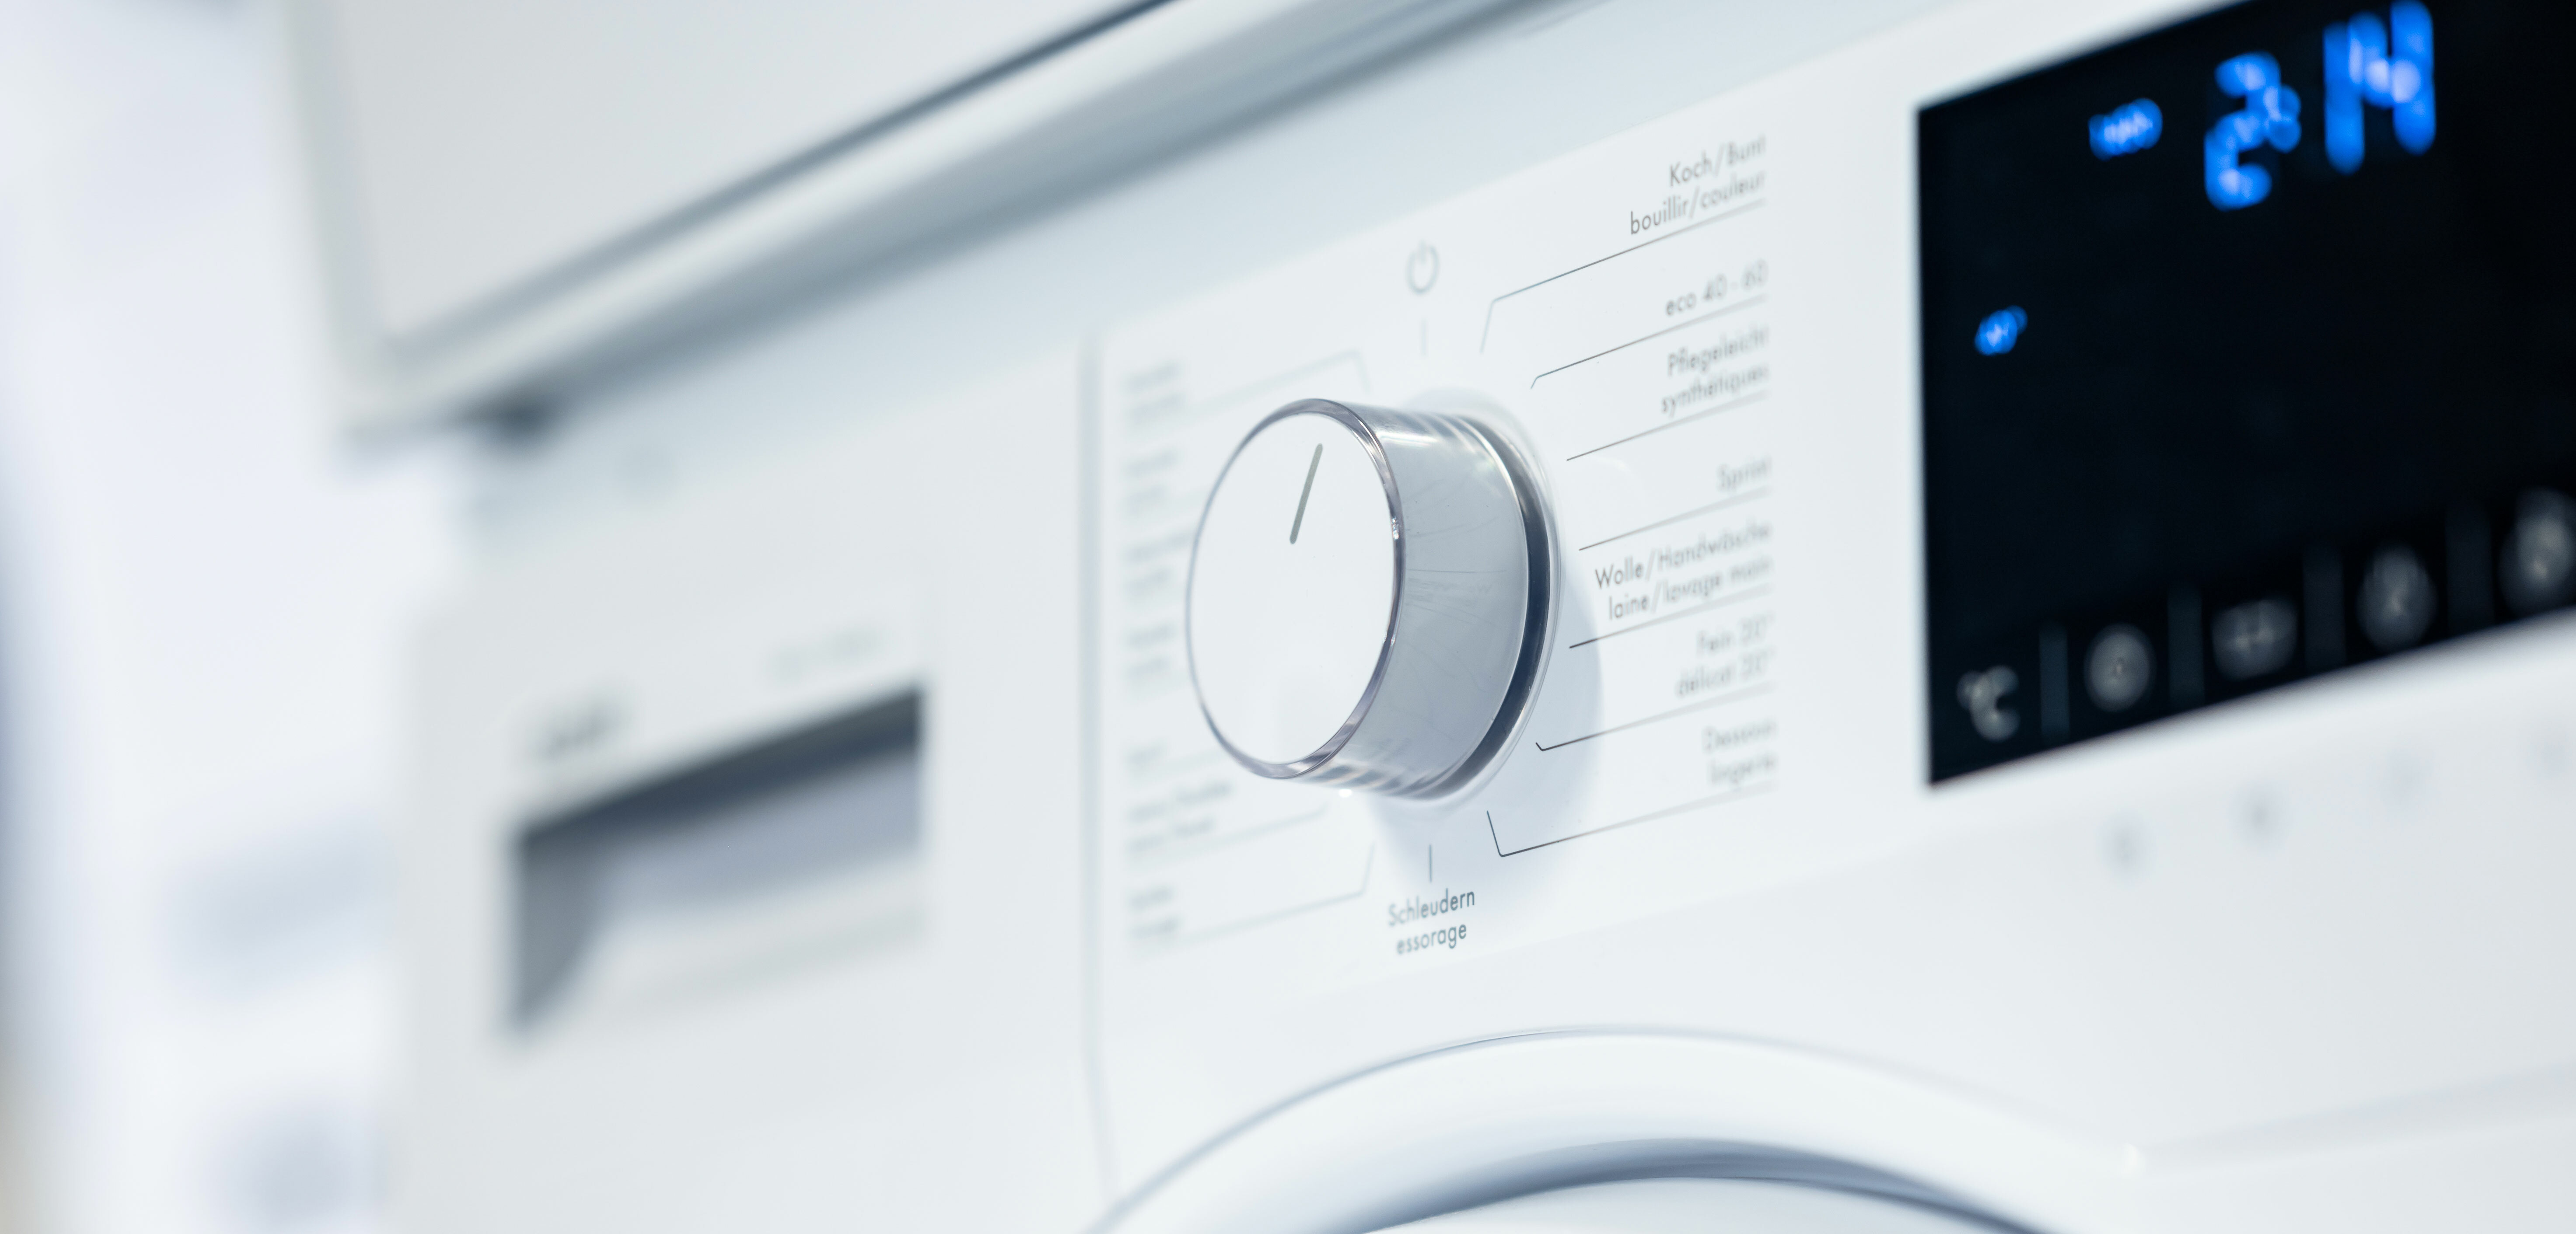 Washing machine economy programme